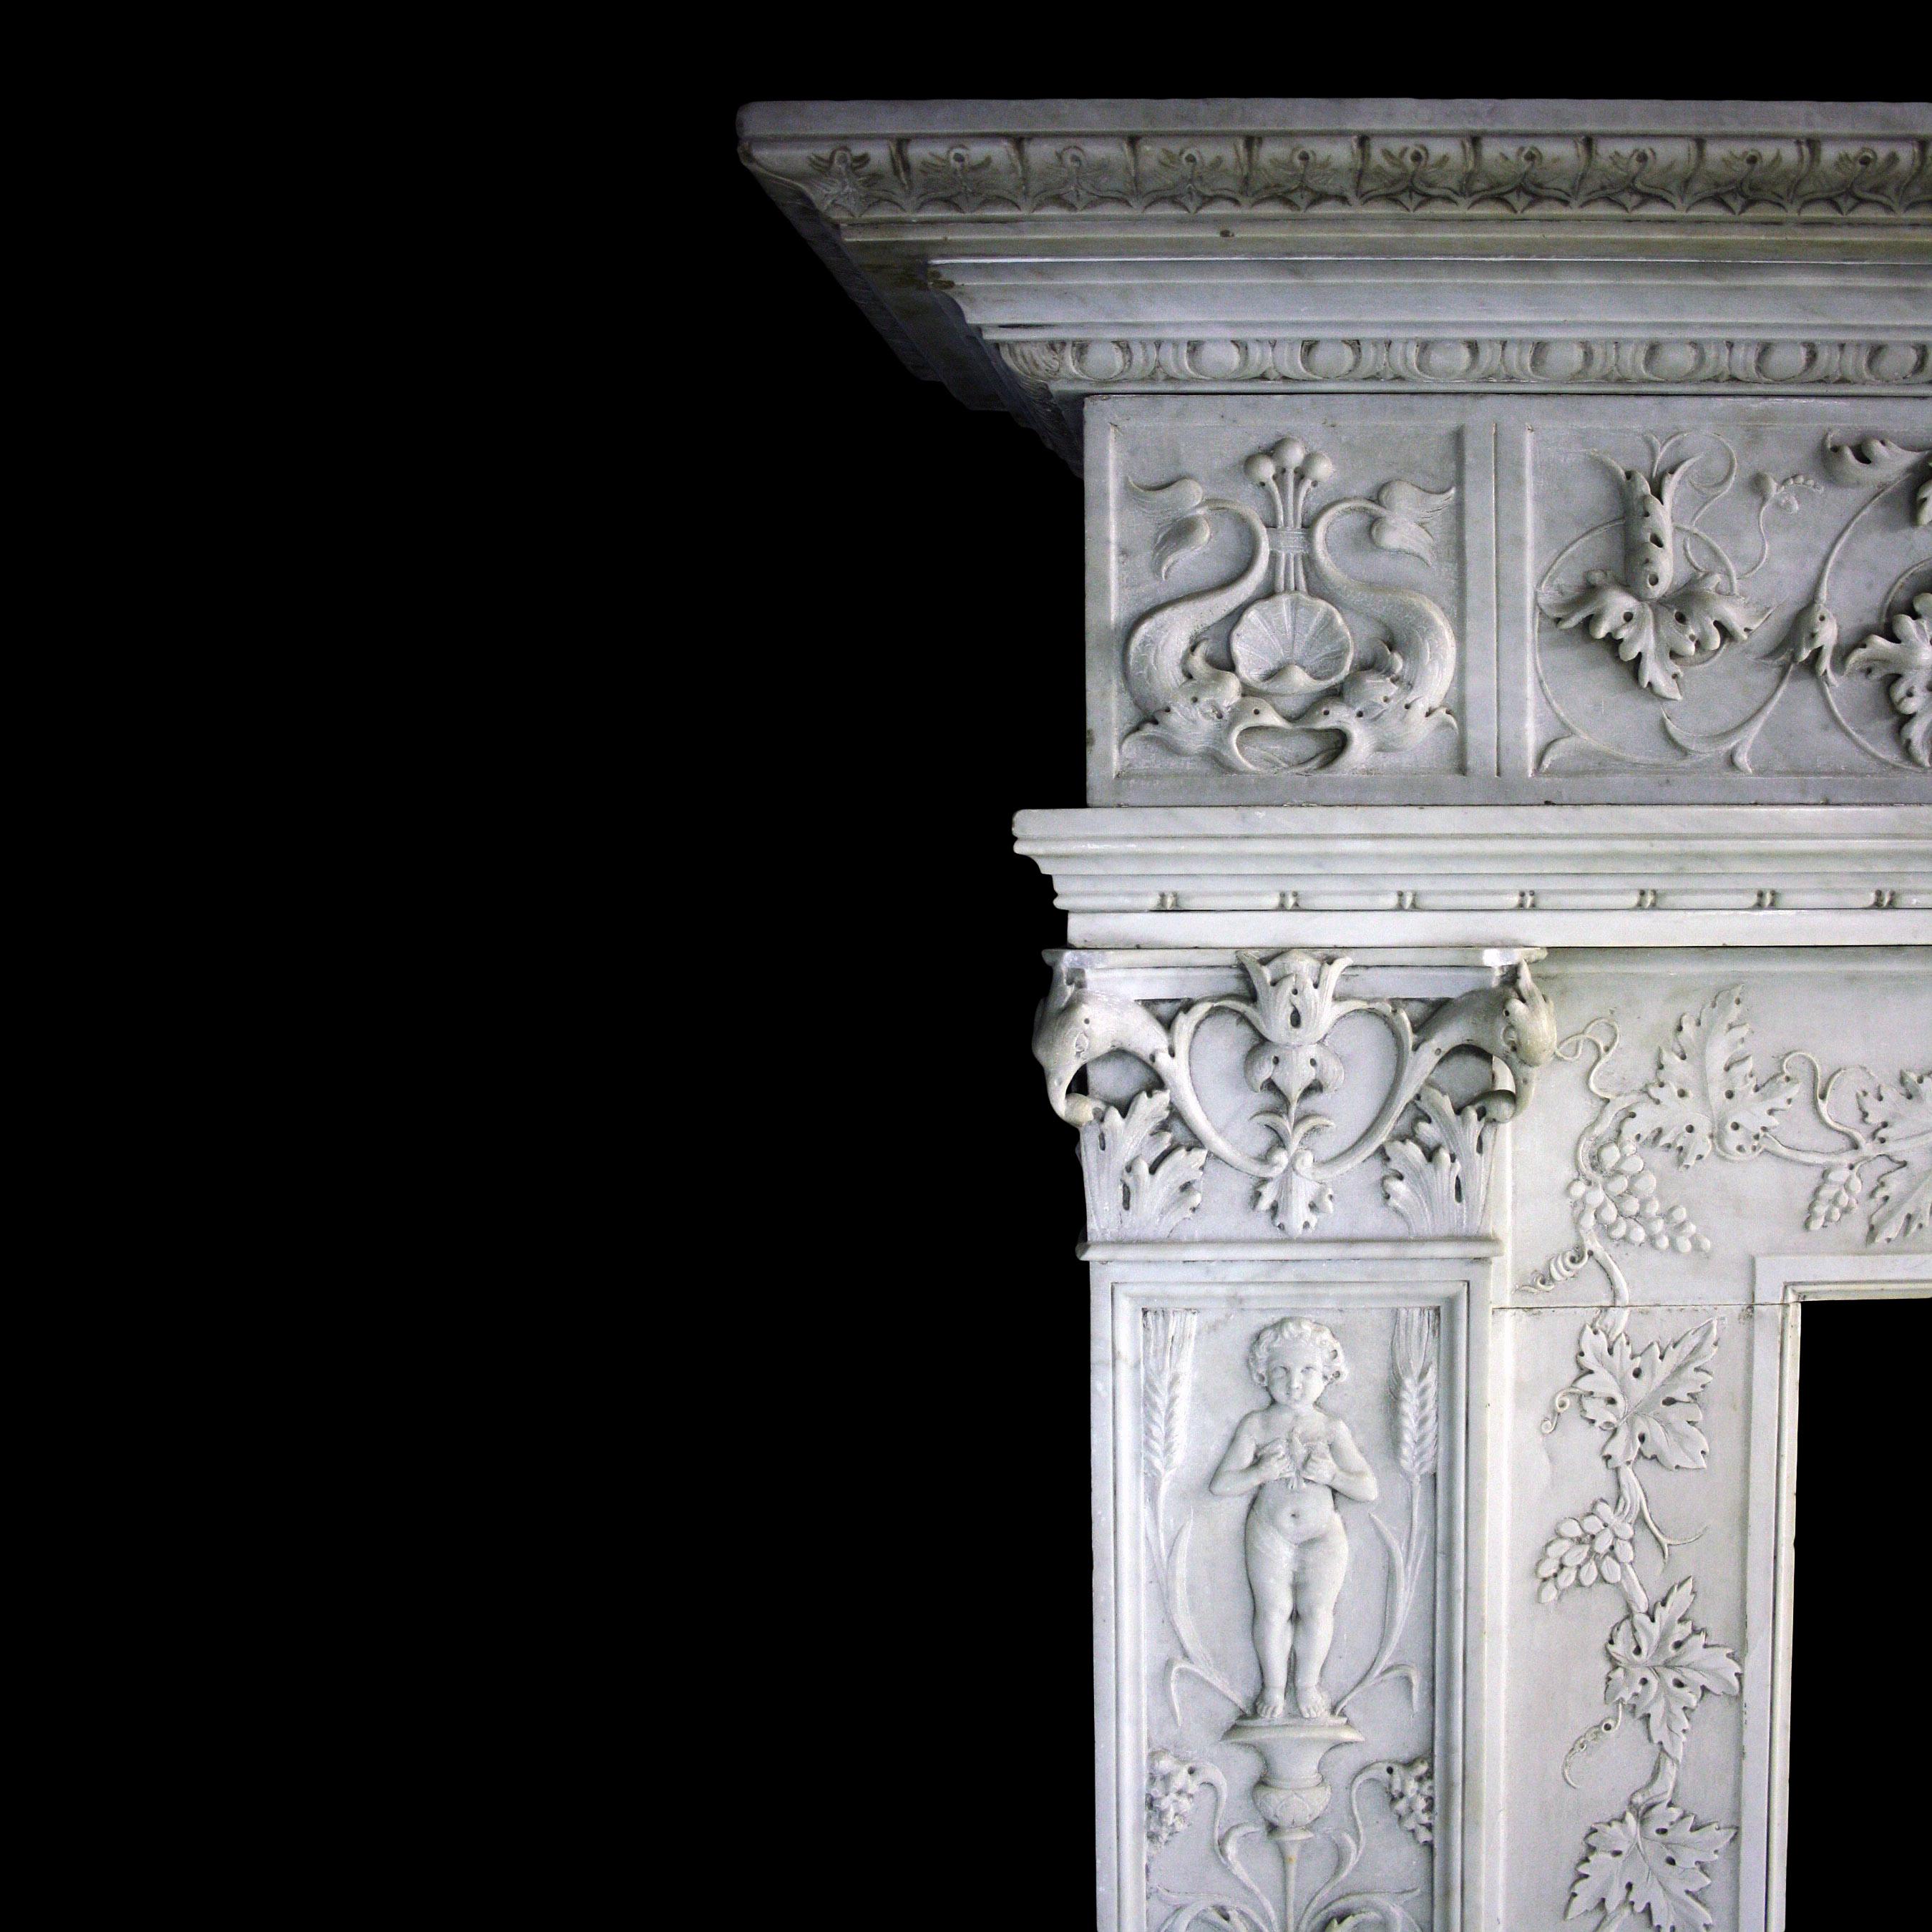 Cheminée du XIXe siècle en marbre de Carrare sculpté, de style Renaissance. Elle possède des blocs de pied moulés à gradins sous des jambages richement décorés avec des chapiteaux corinthiens. L'intérieur est orné de vignes et de grappes de raisin,